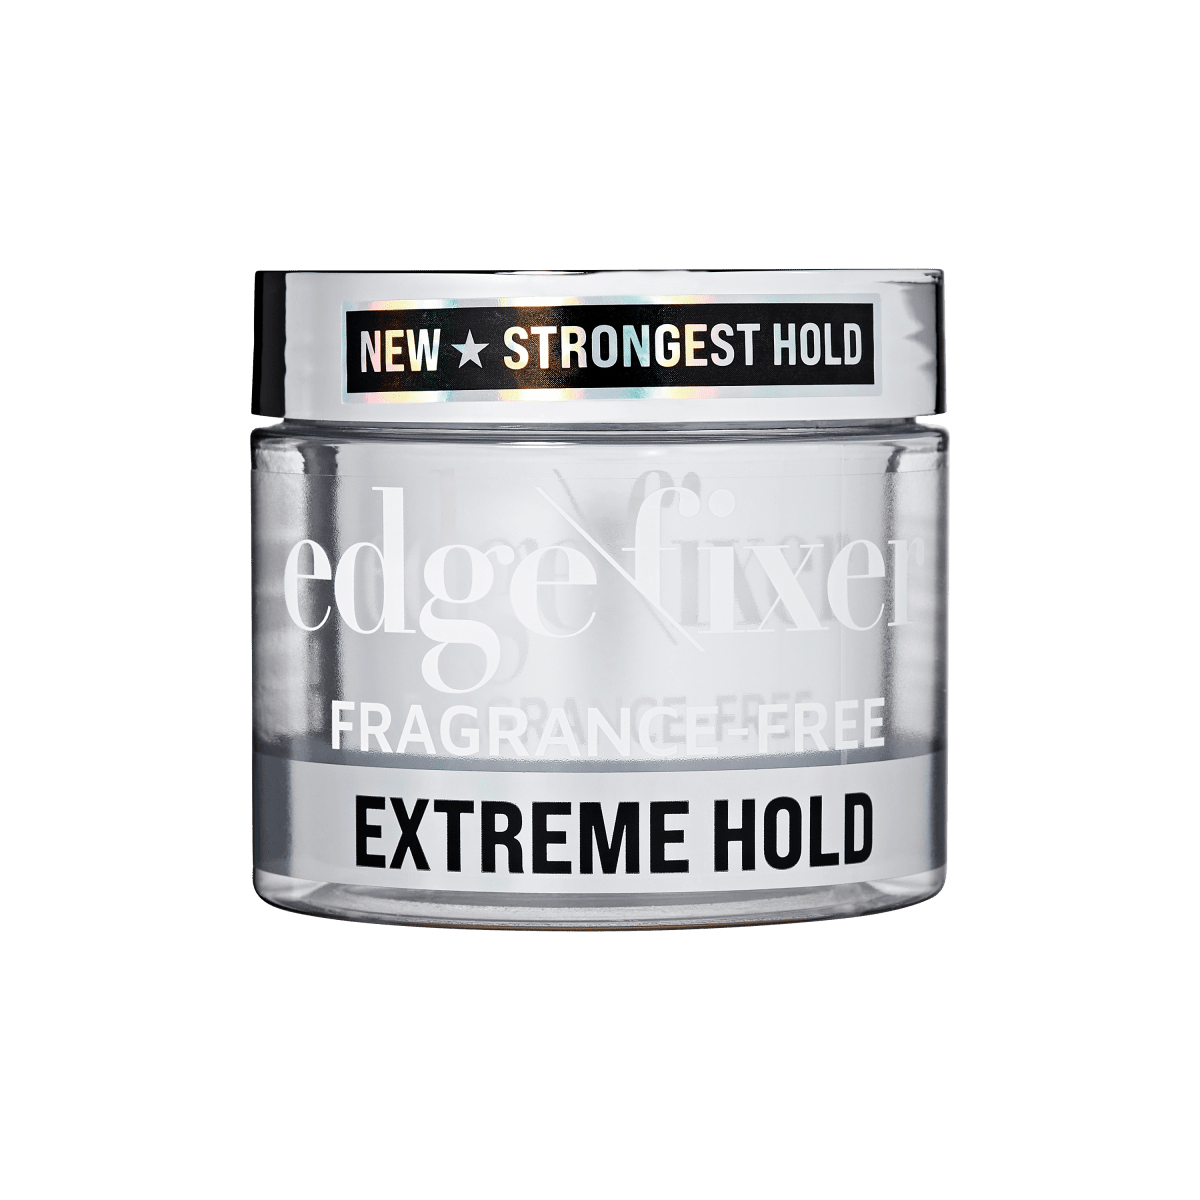 Edge Fixer Extreme Hold Gel, 3.38 oz - Fragrance Free – KISS USA